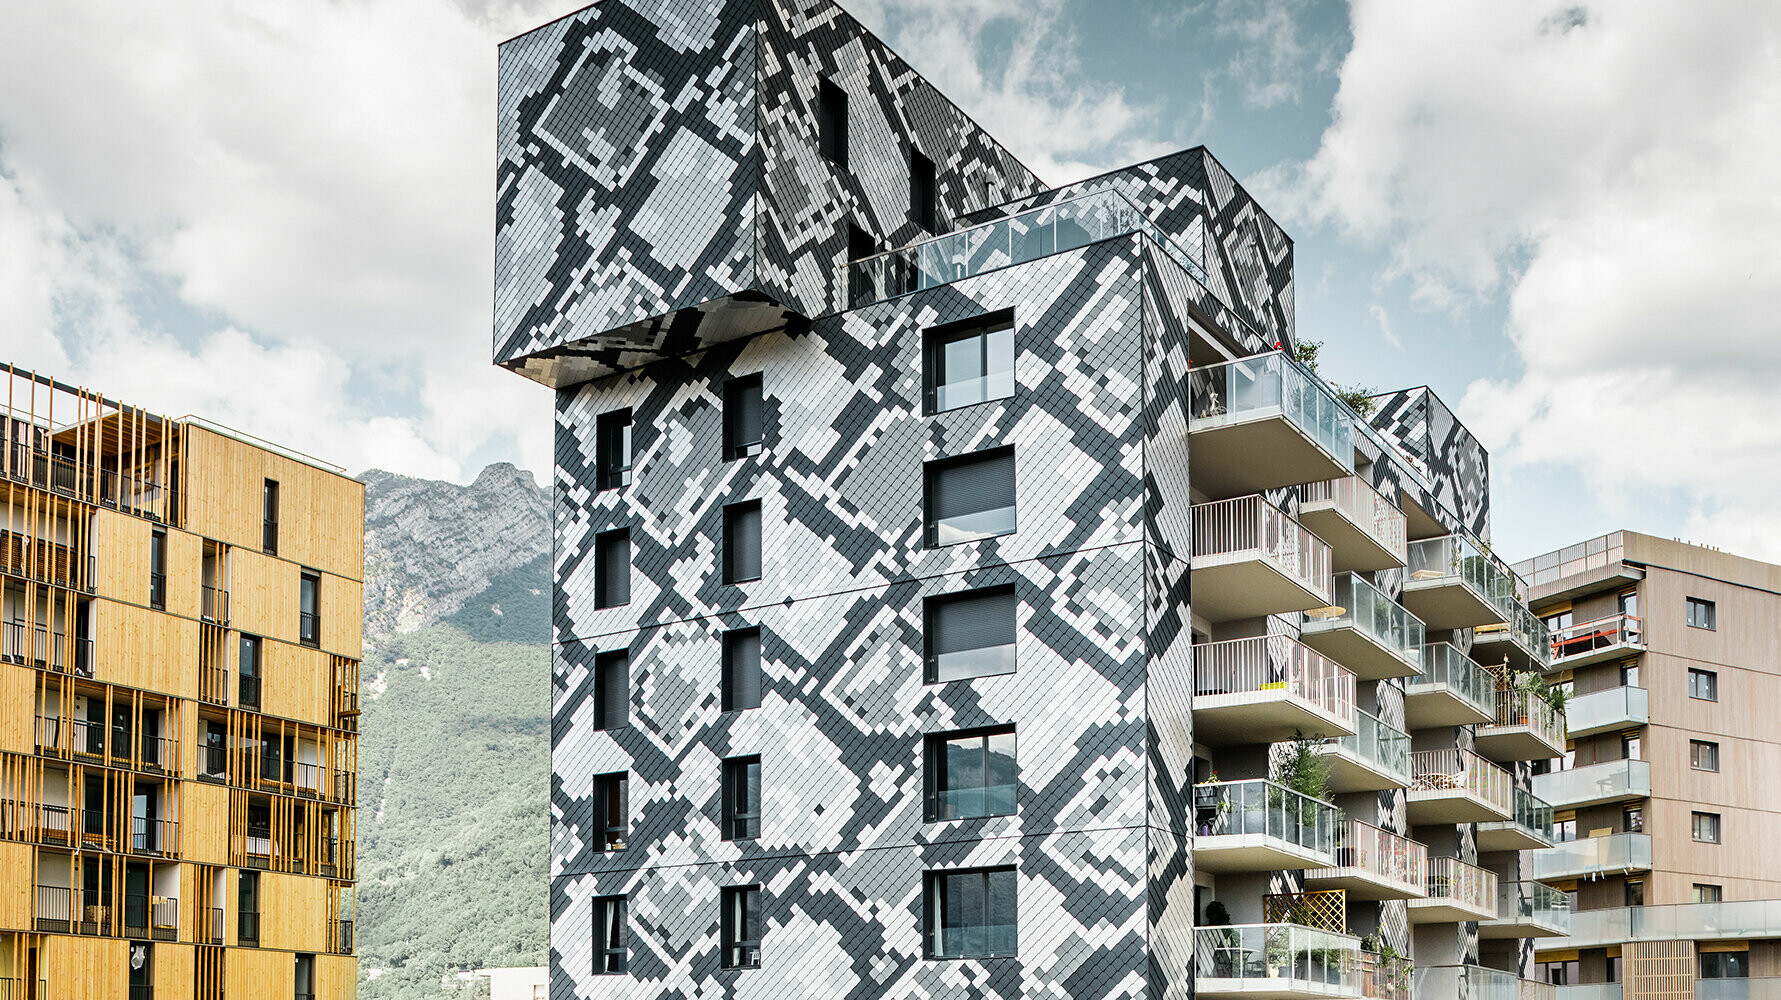 Die Fassade dieses Mehrfamilienhauses in Grenoble erinnert mit ihren verschiedenfarbigen Schuppen an eine Schlange.